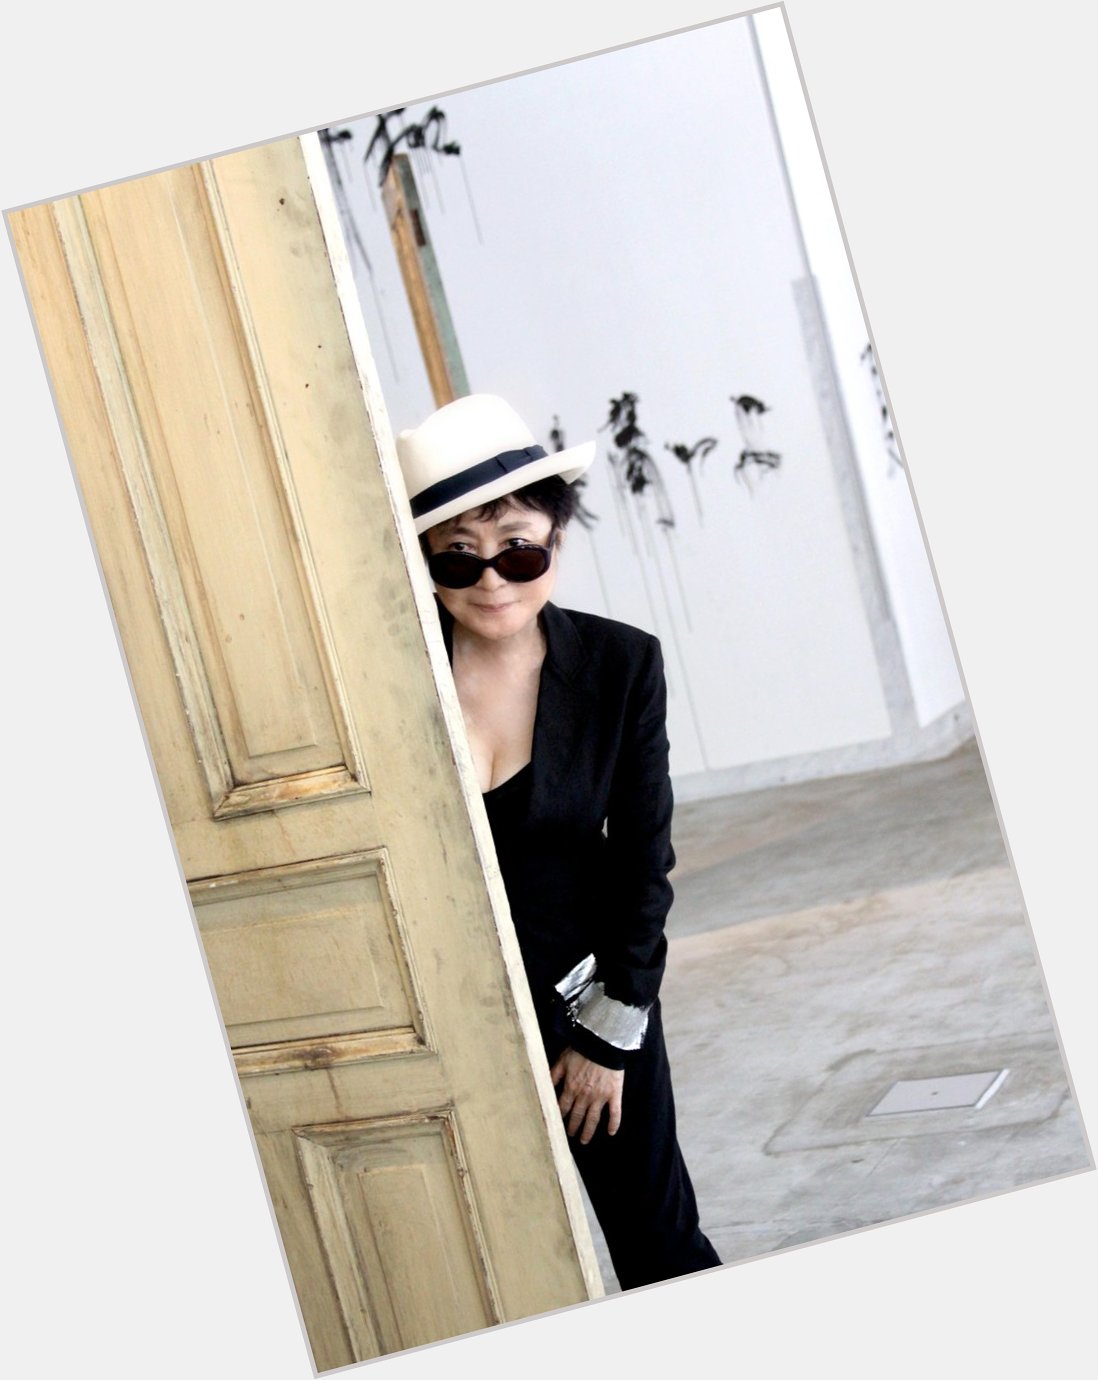 Happy Birthday, Yoko Ono! 
(Pictured with \"DOORS\", 2011. Installation of 9 found wooden doors) 